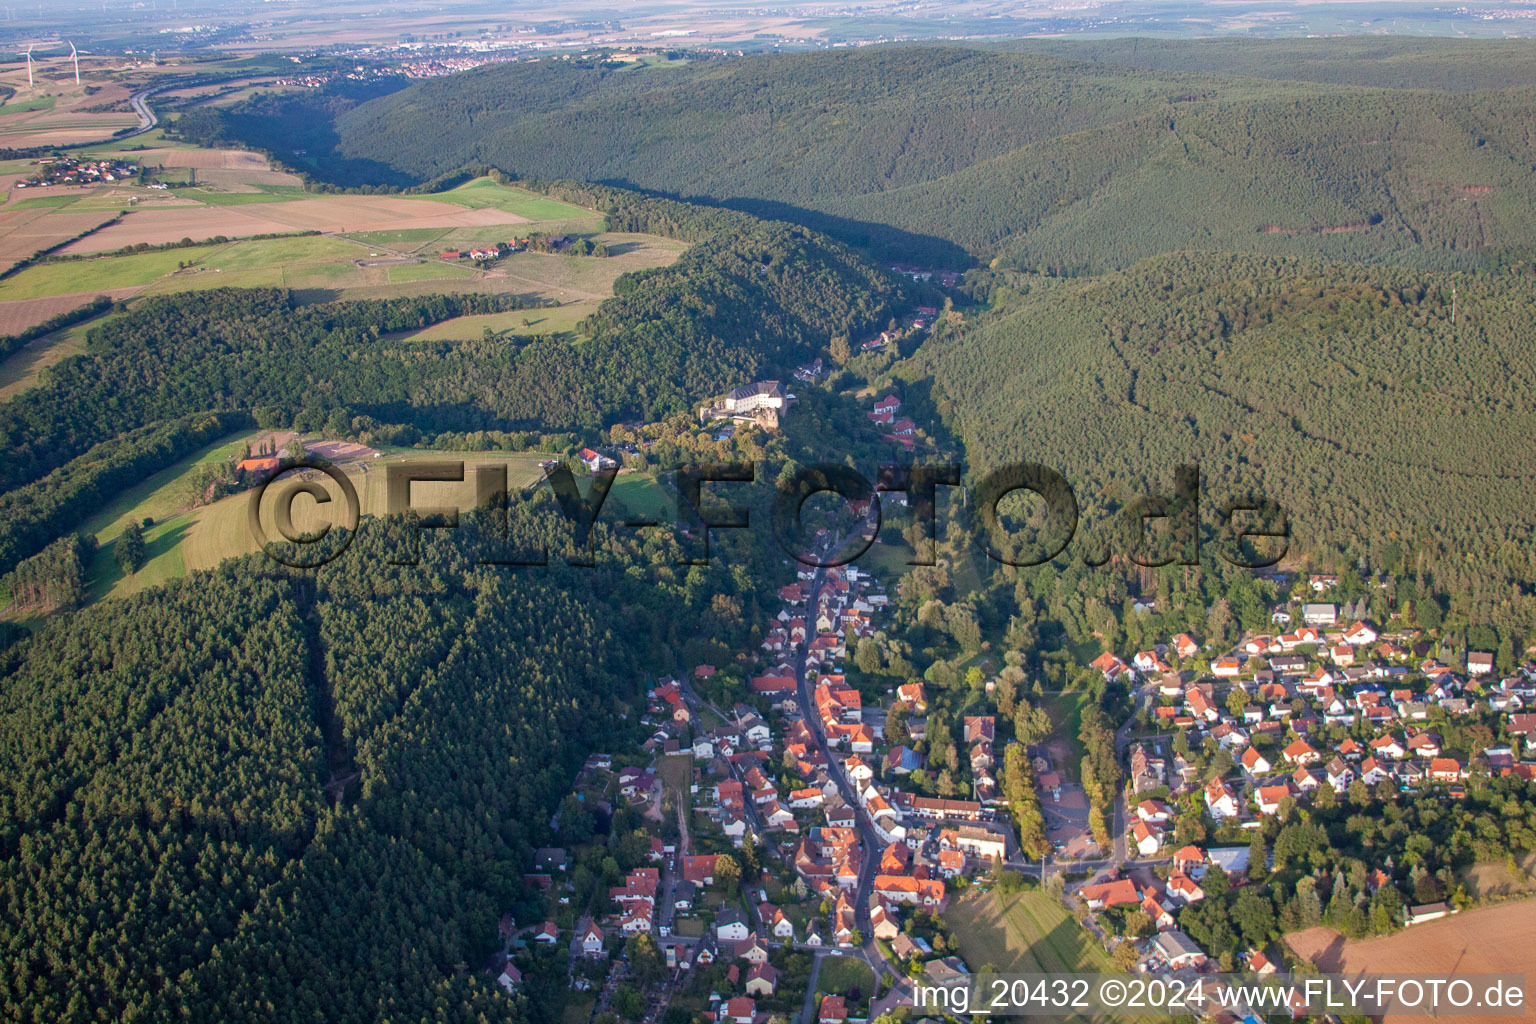 Village view in the district Hoeningen in Altleiningen in the state Rhineland-Palatinate